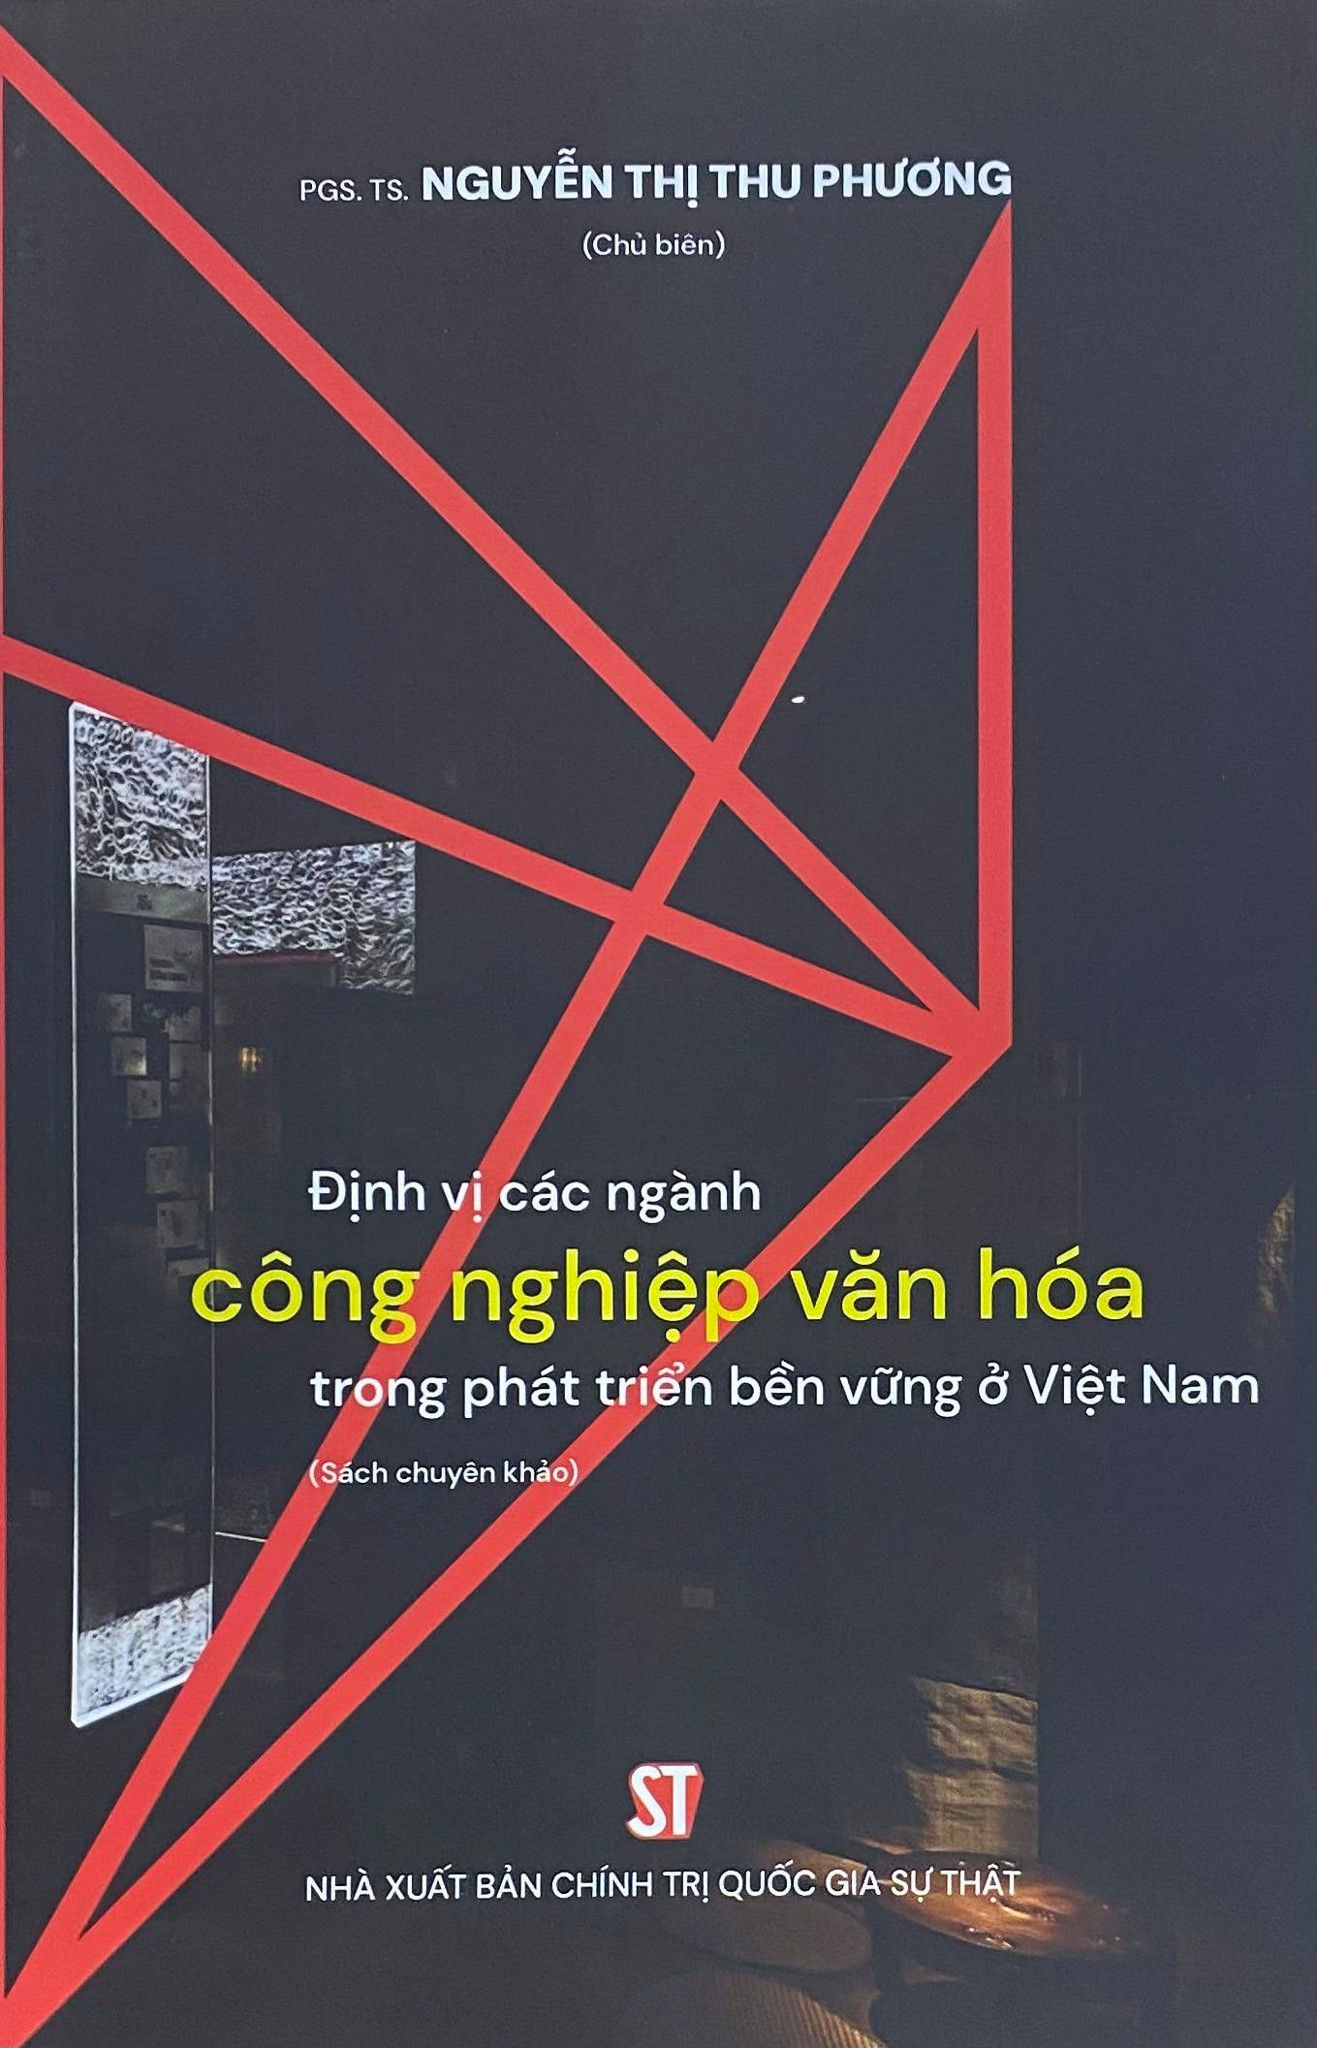  Định vị các ngành công nghiệp văn hóa trong phát triển bền vững ở Việt Nam (Sách chuyên khảo) 